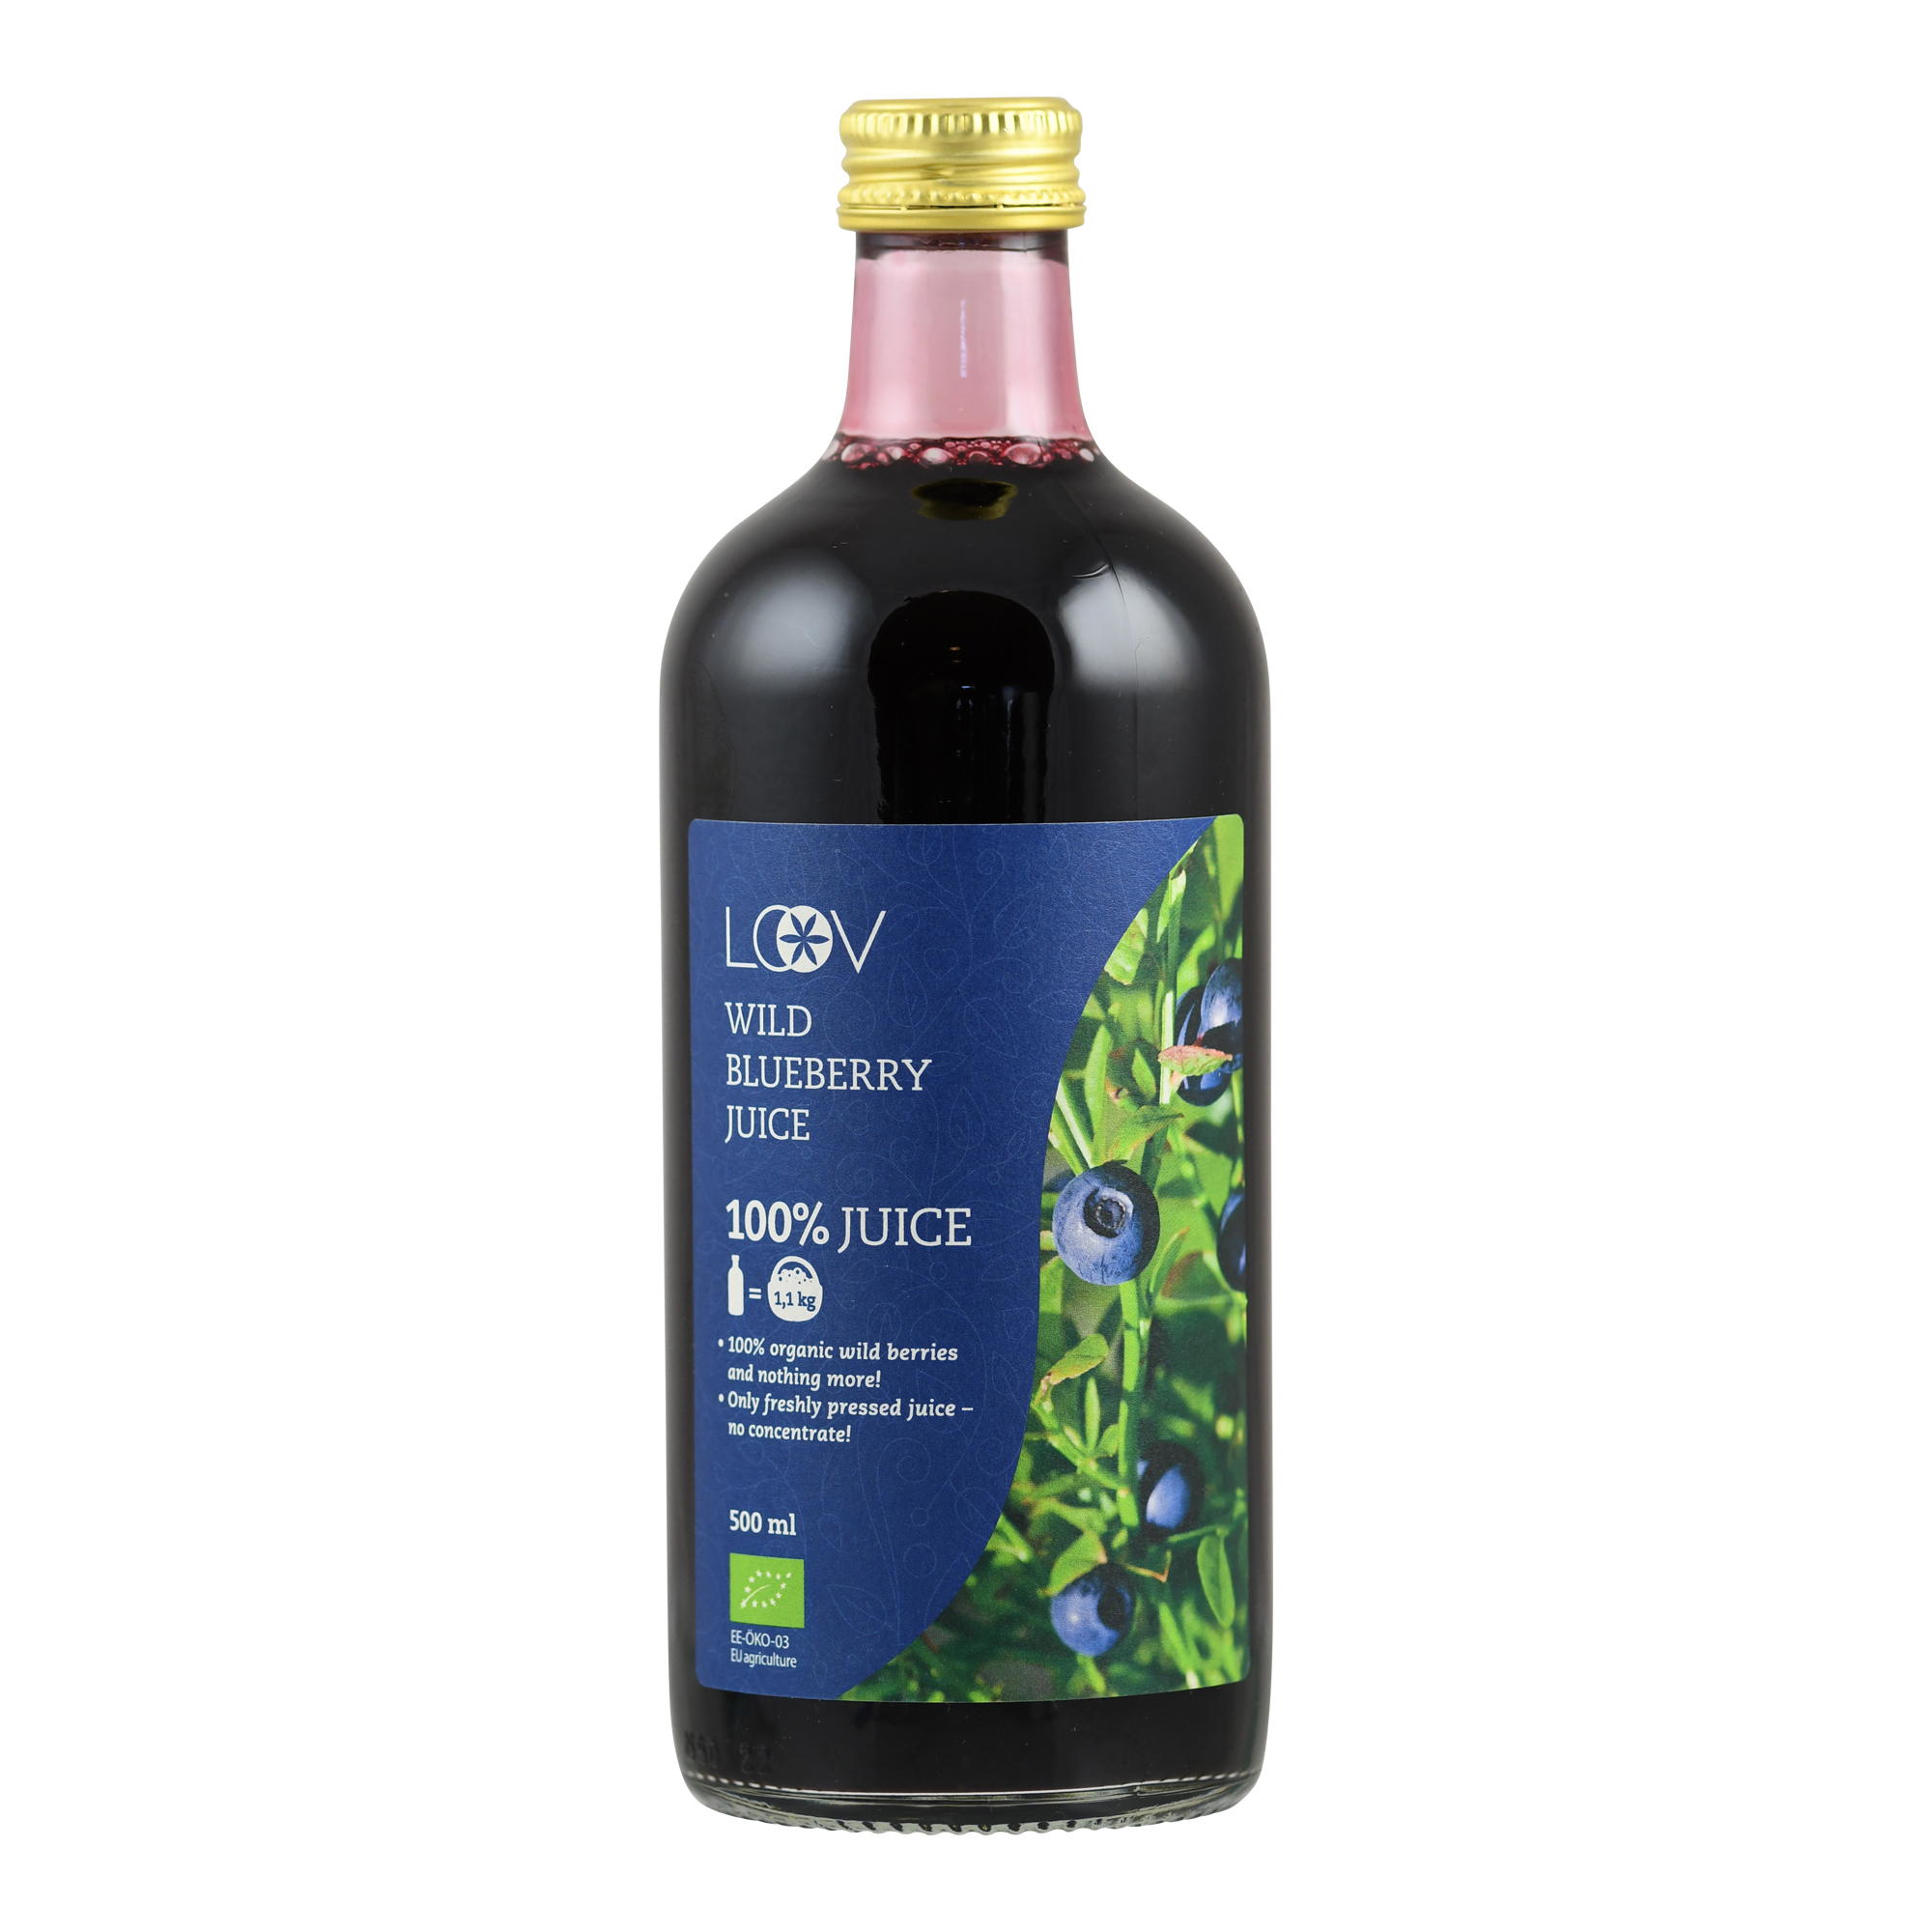 Wilde Blaubeere (Organic wild Blueberry) Saft von LOOV.